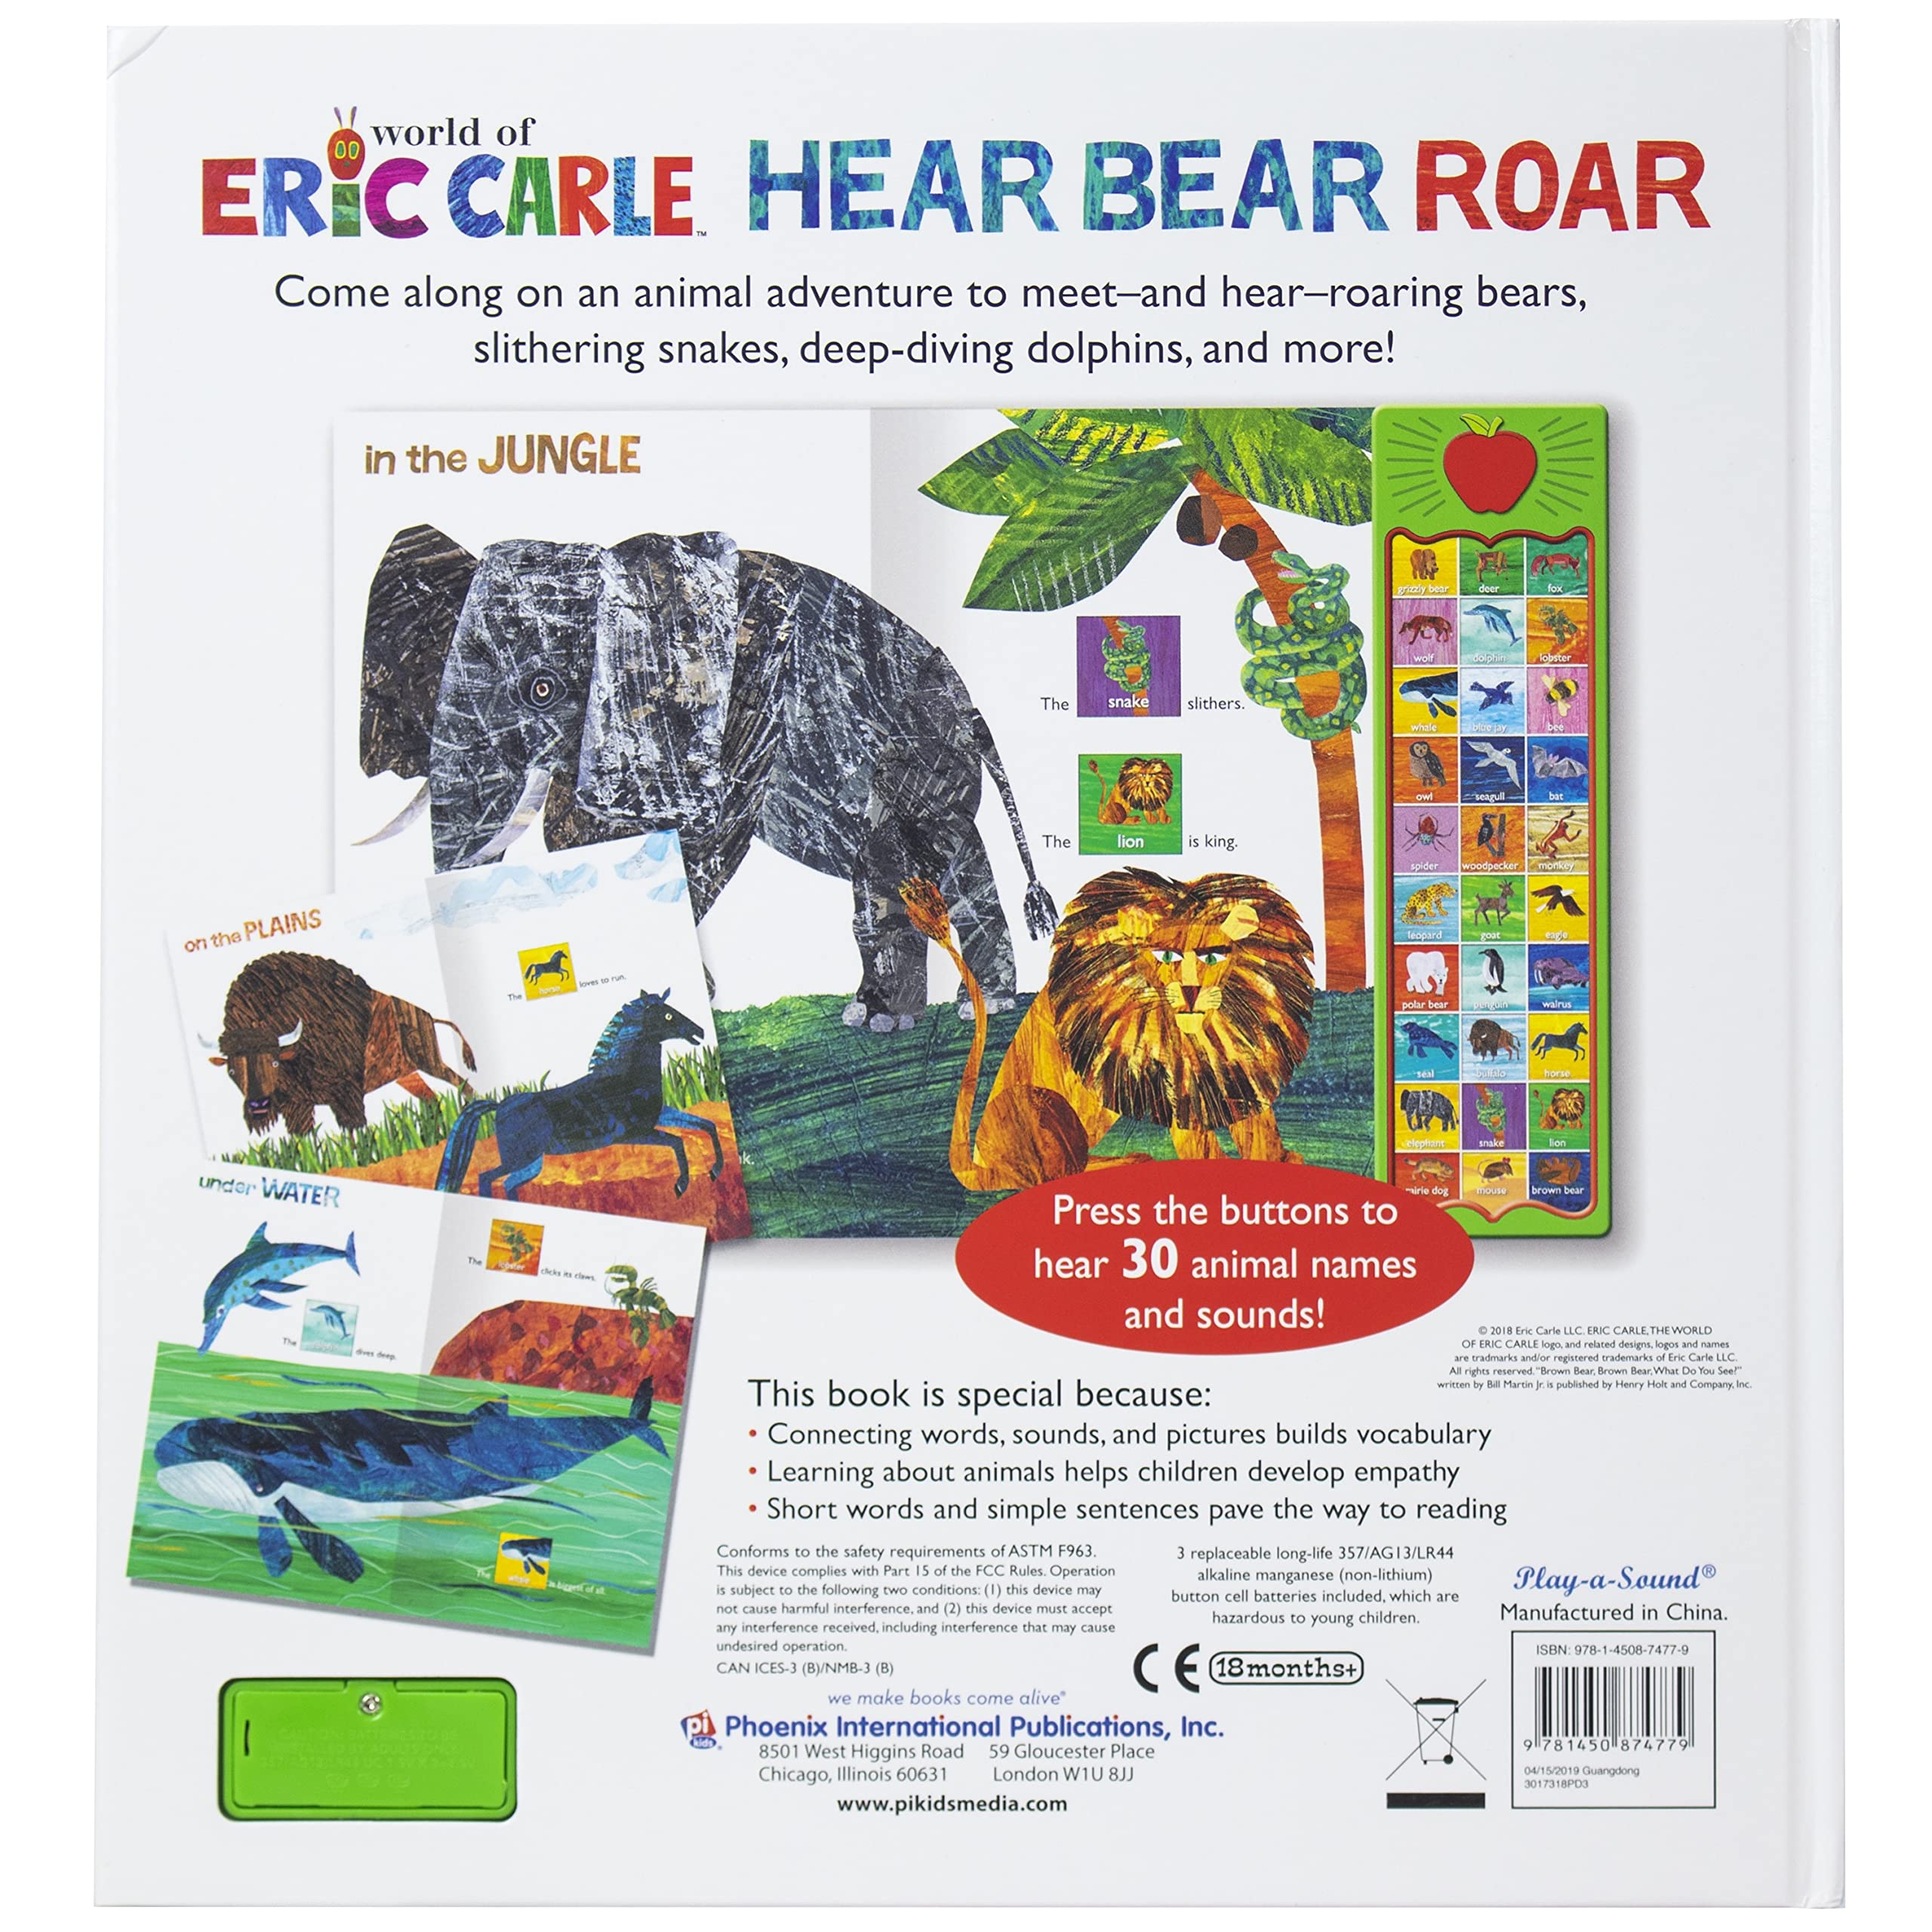 Hear Bear Roar